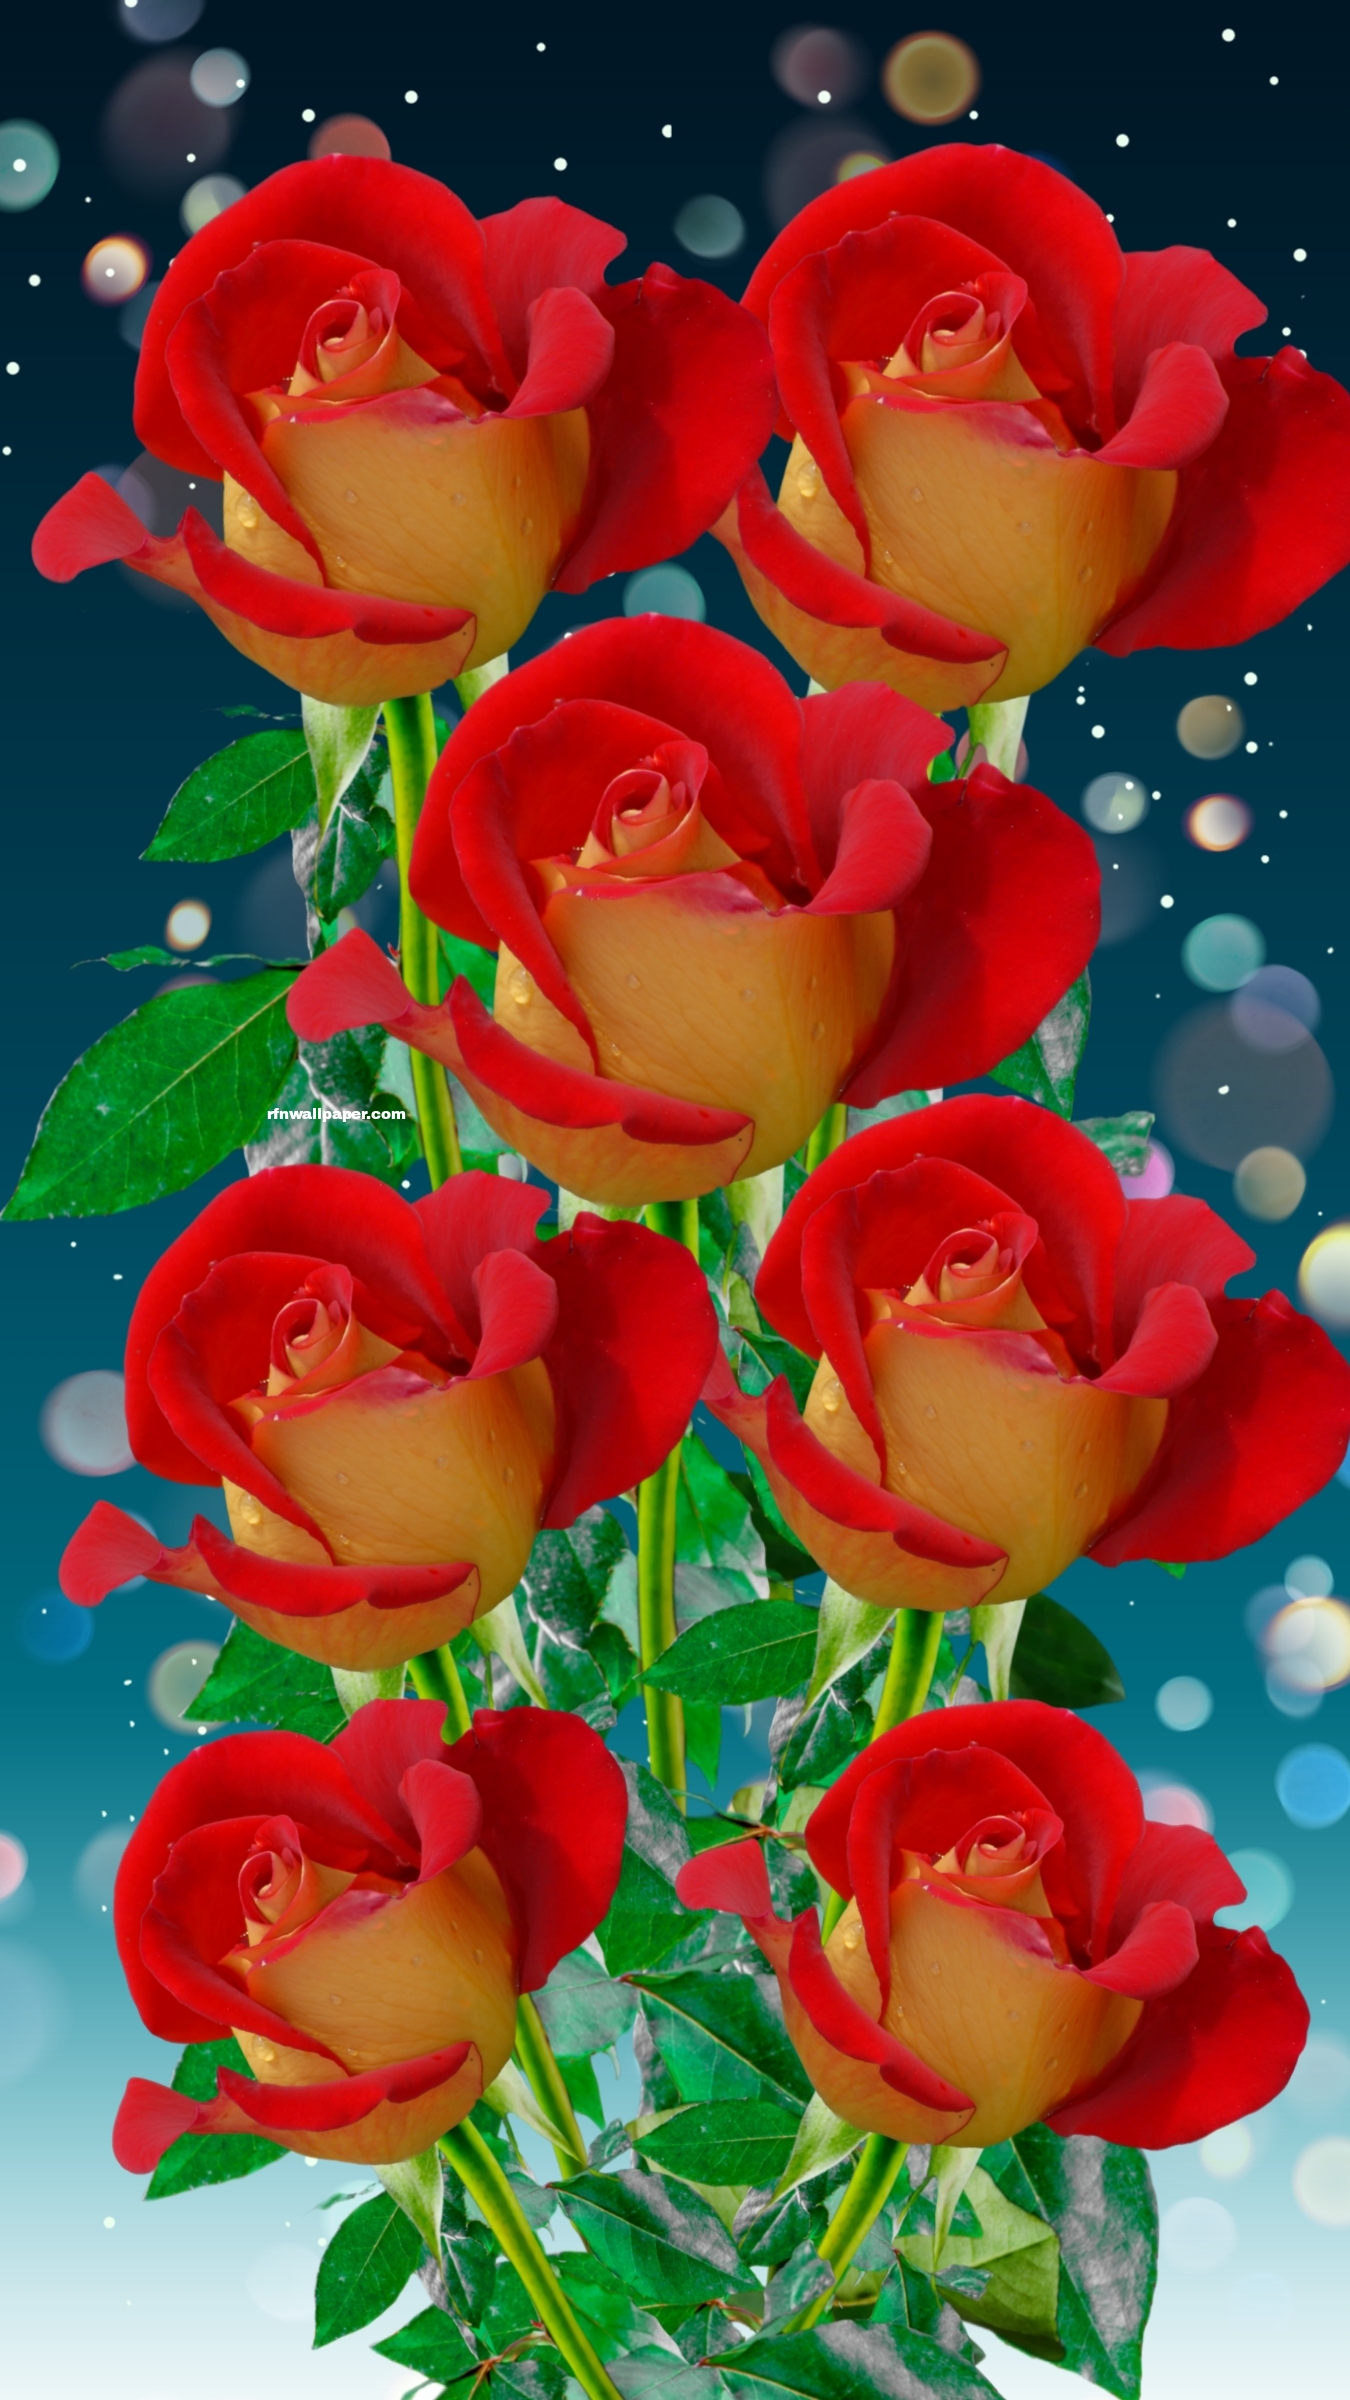 Roses - RFN Wallpaper